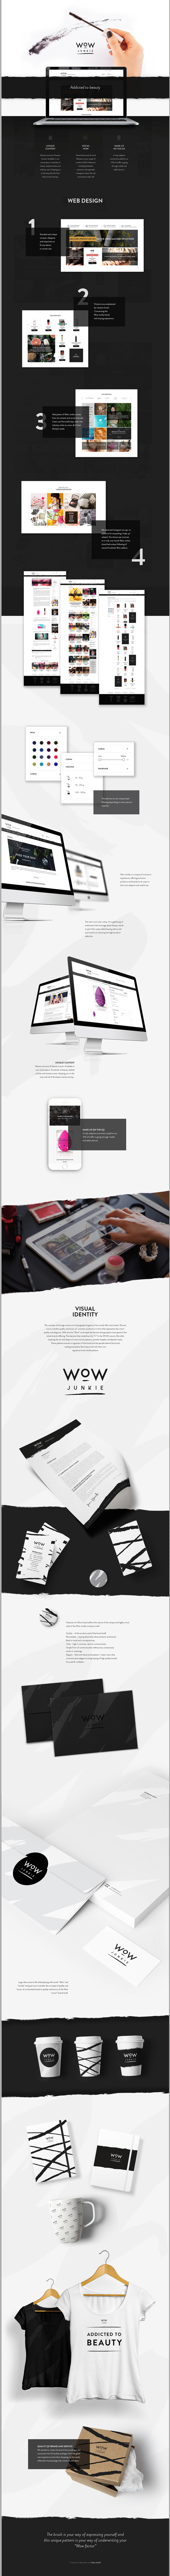 app beauty Project UI/UX Website wordpress wow